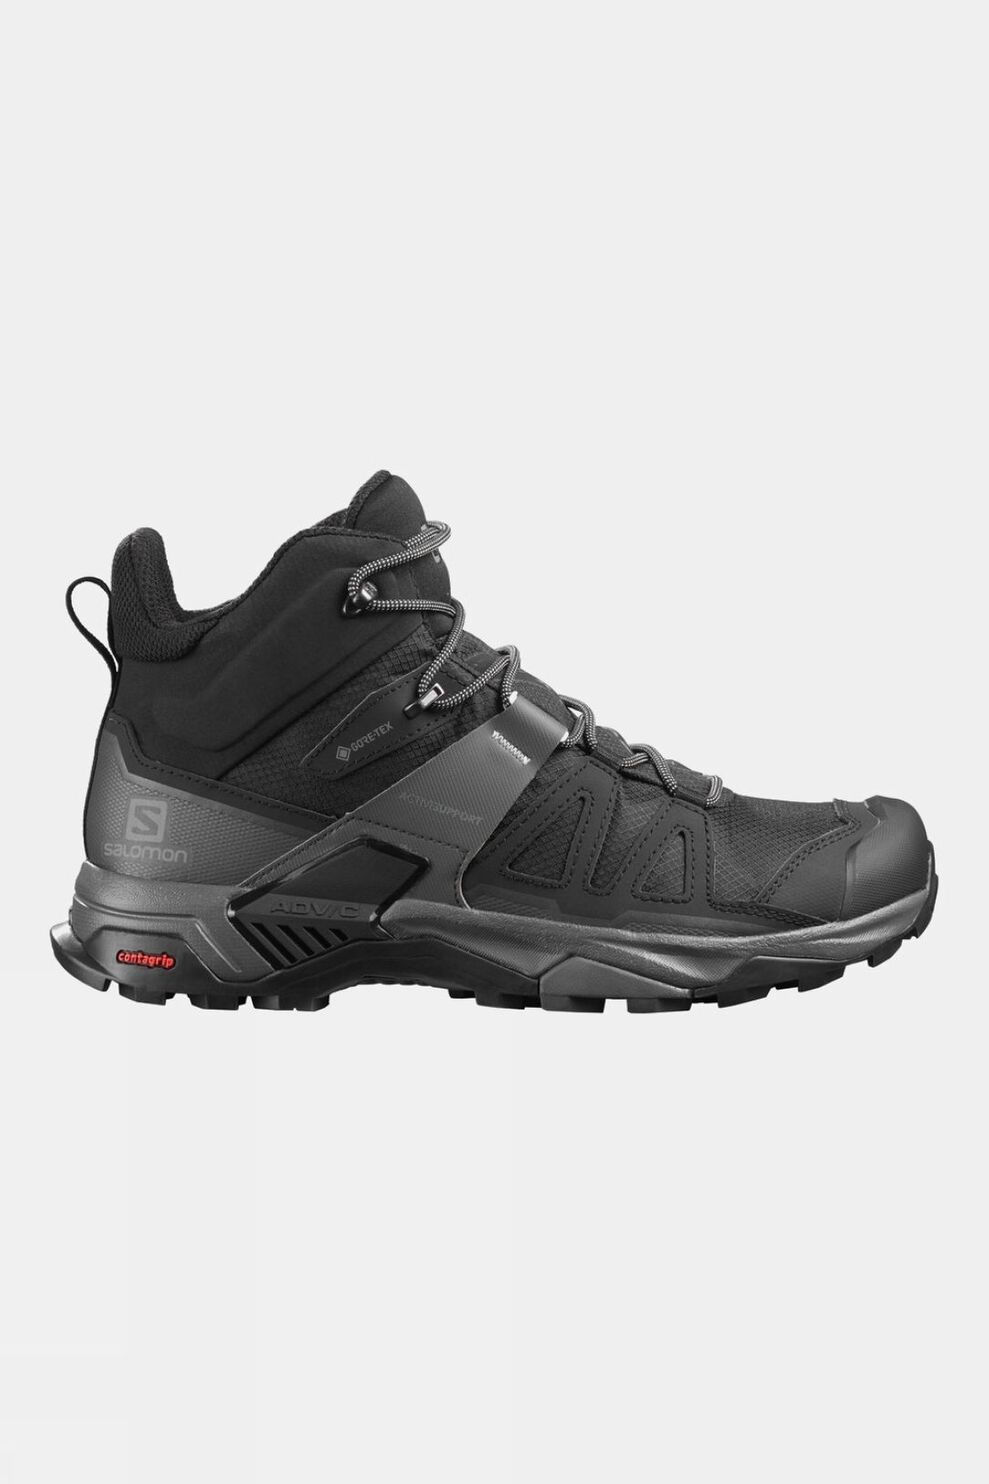 Salomon Mens X Ultra 4 Mid GTX Hiking Boots